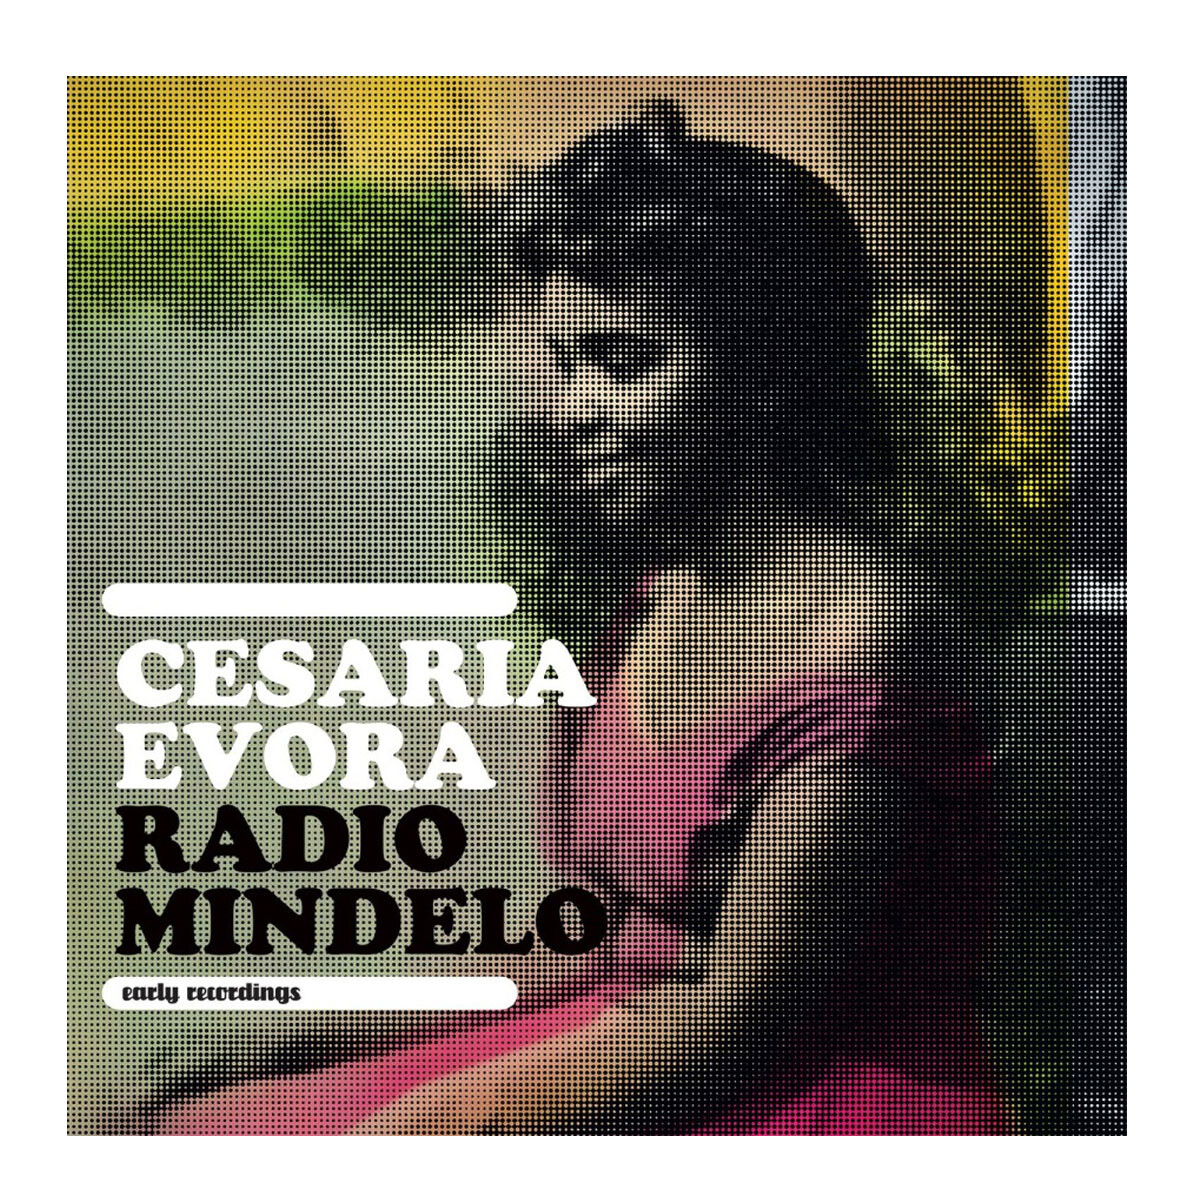 Evora, Cesaria - Radio Mindelo - Vinilo 